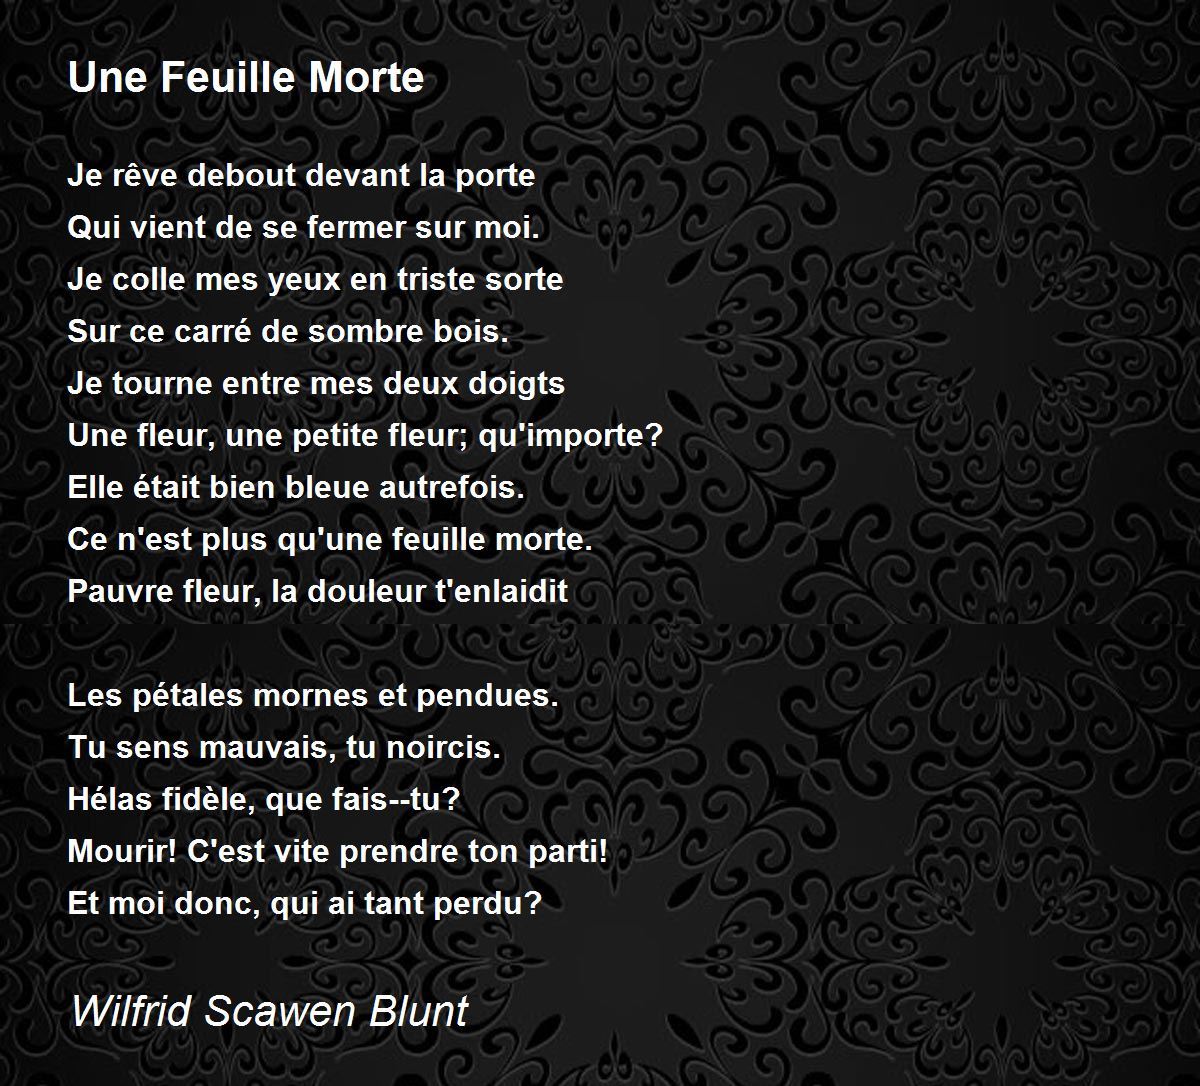 Une Feuille Morte by Wilfrid Scawen Blunt - Une Feuille Morte Poem